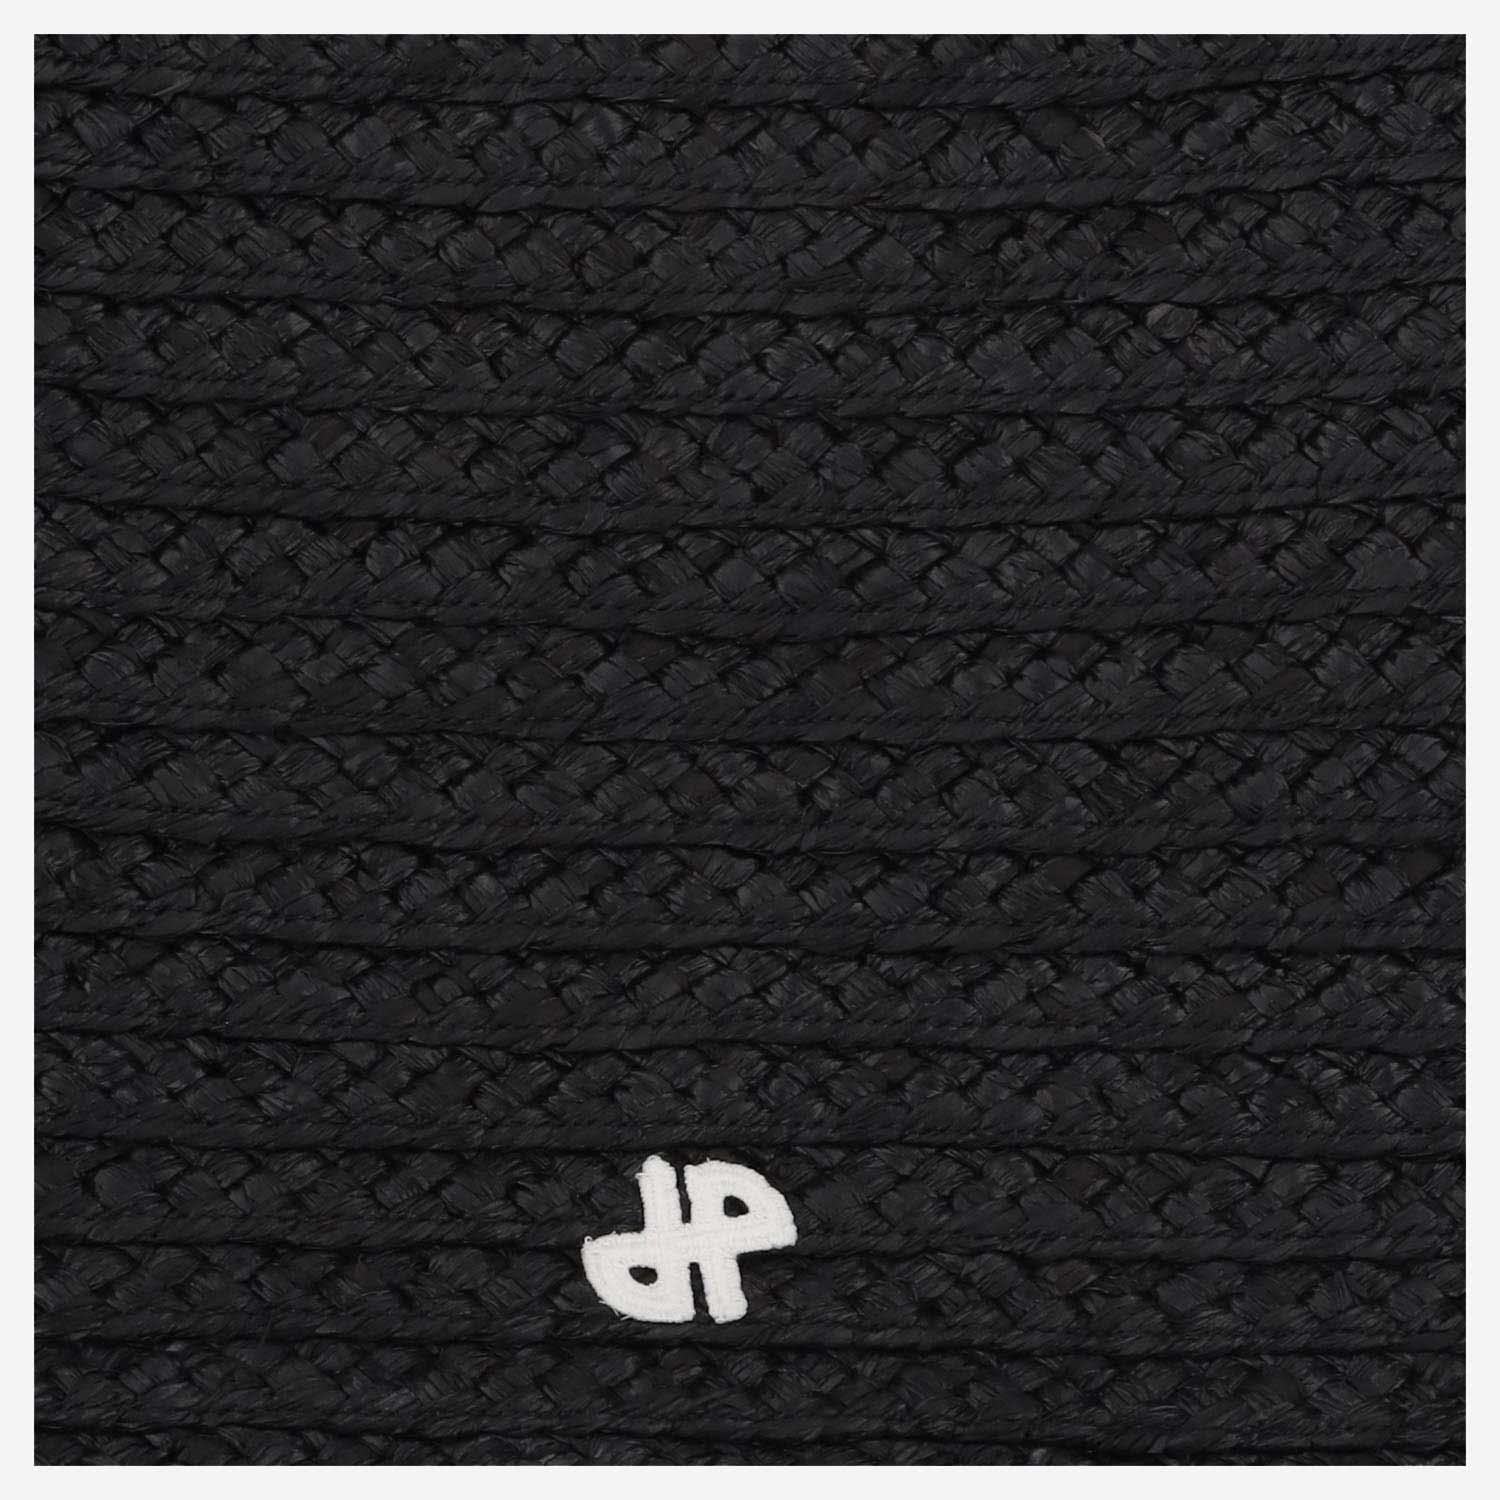 Shop Patou Large Jp Tote Bag In Black